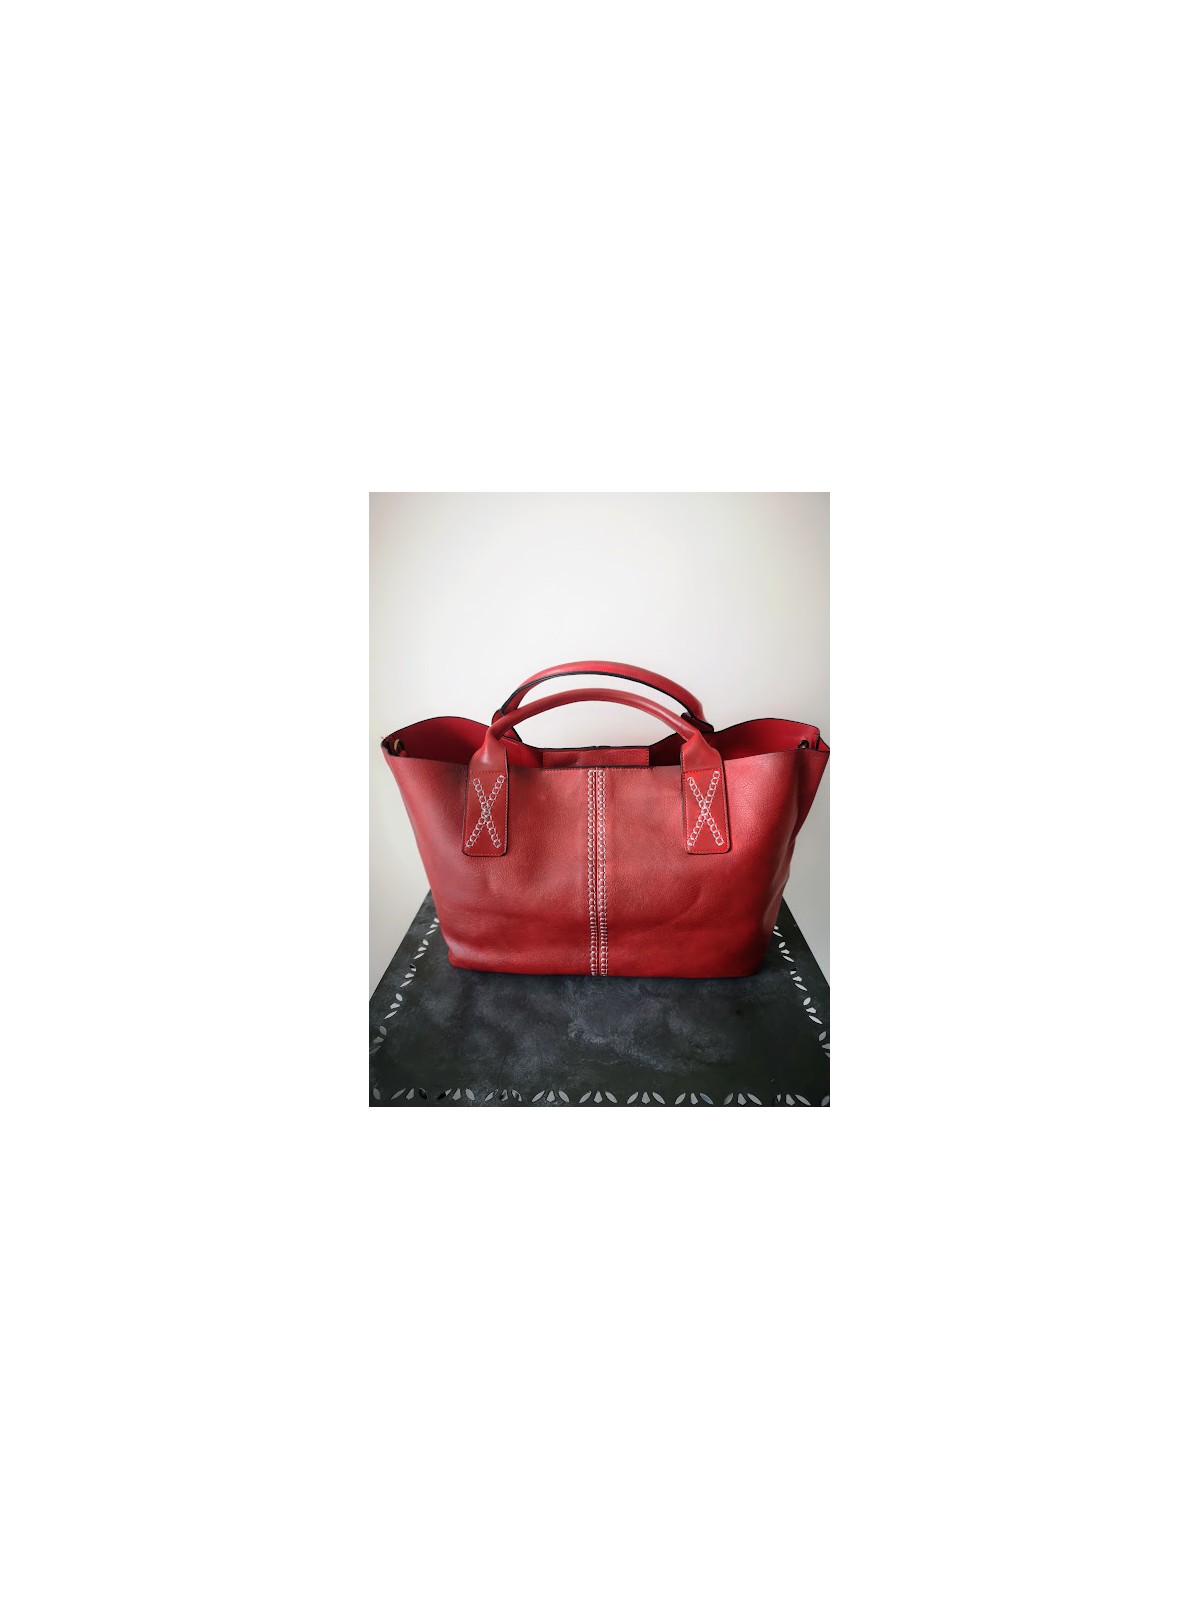 Grand sac rouge l 1 vue de face l Tilleulmenthe mode boutique de vêtements femme en ligne